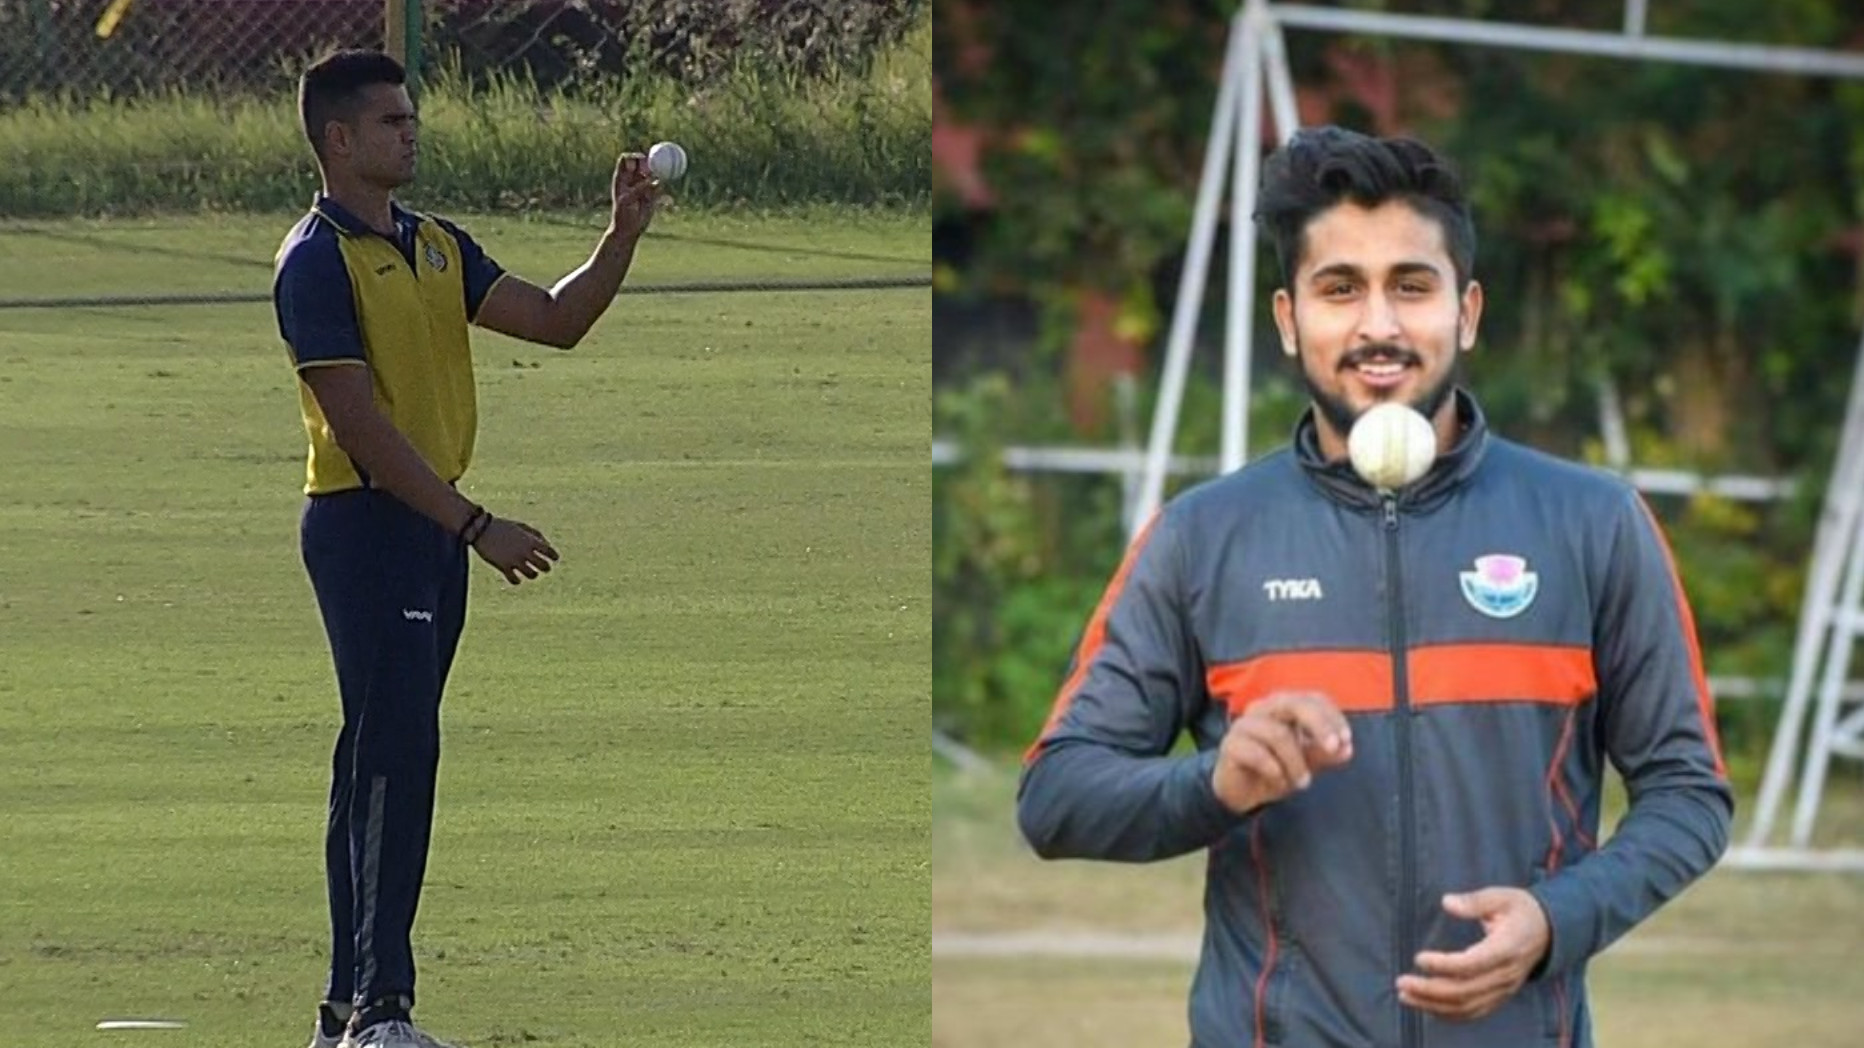 SMAT 2022: Goa’s Arjun Tendulkar and J&K’s Umran Malik star with the ball with 4-fers for their teams